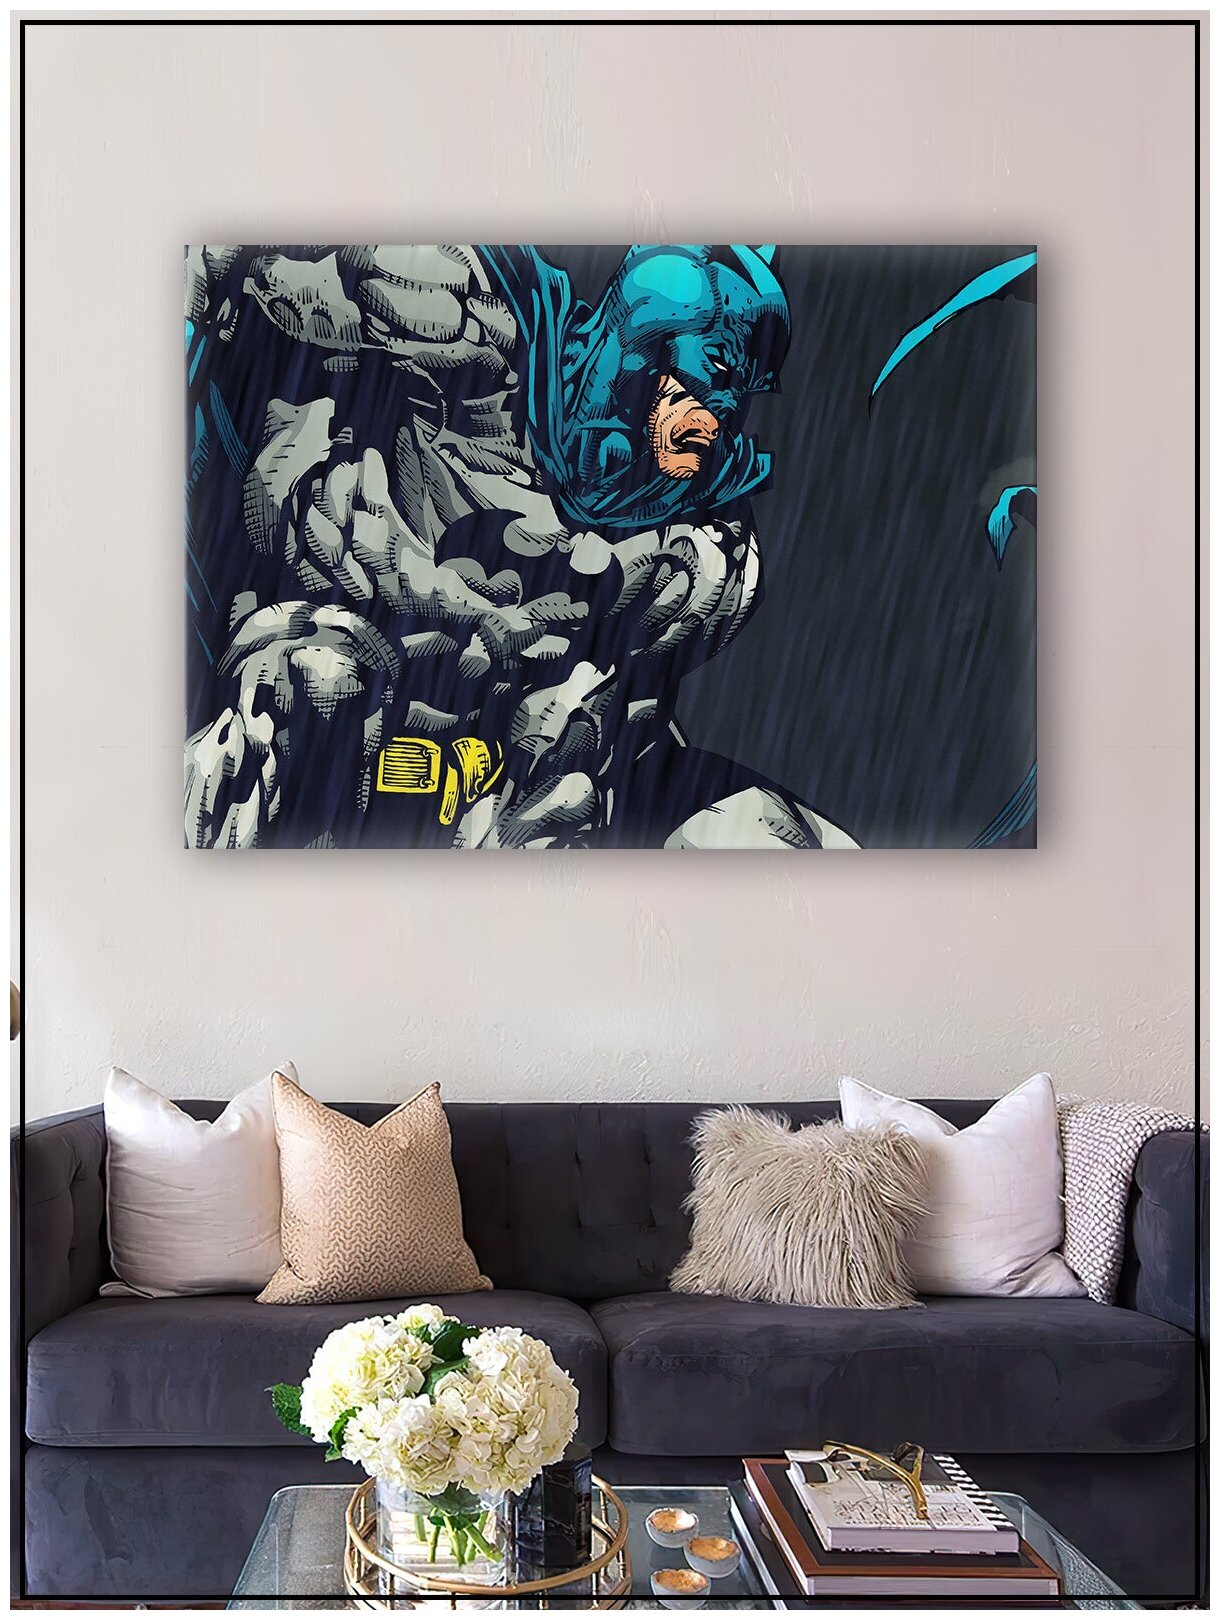 Картина для интерьера на натуральном хлопковом холсте "Бэтмен", 30*40см, холст на подрамнике, картина в подарок для дома